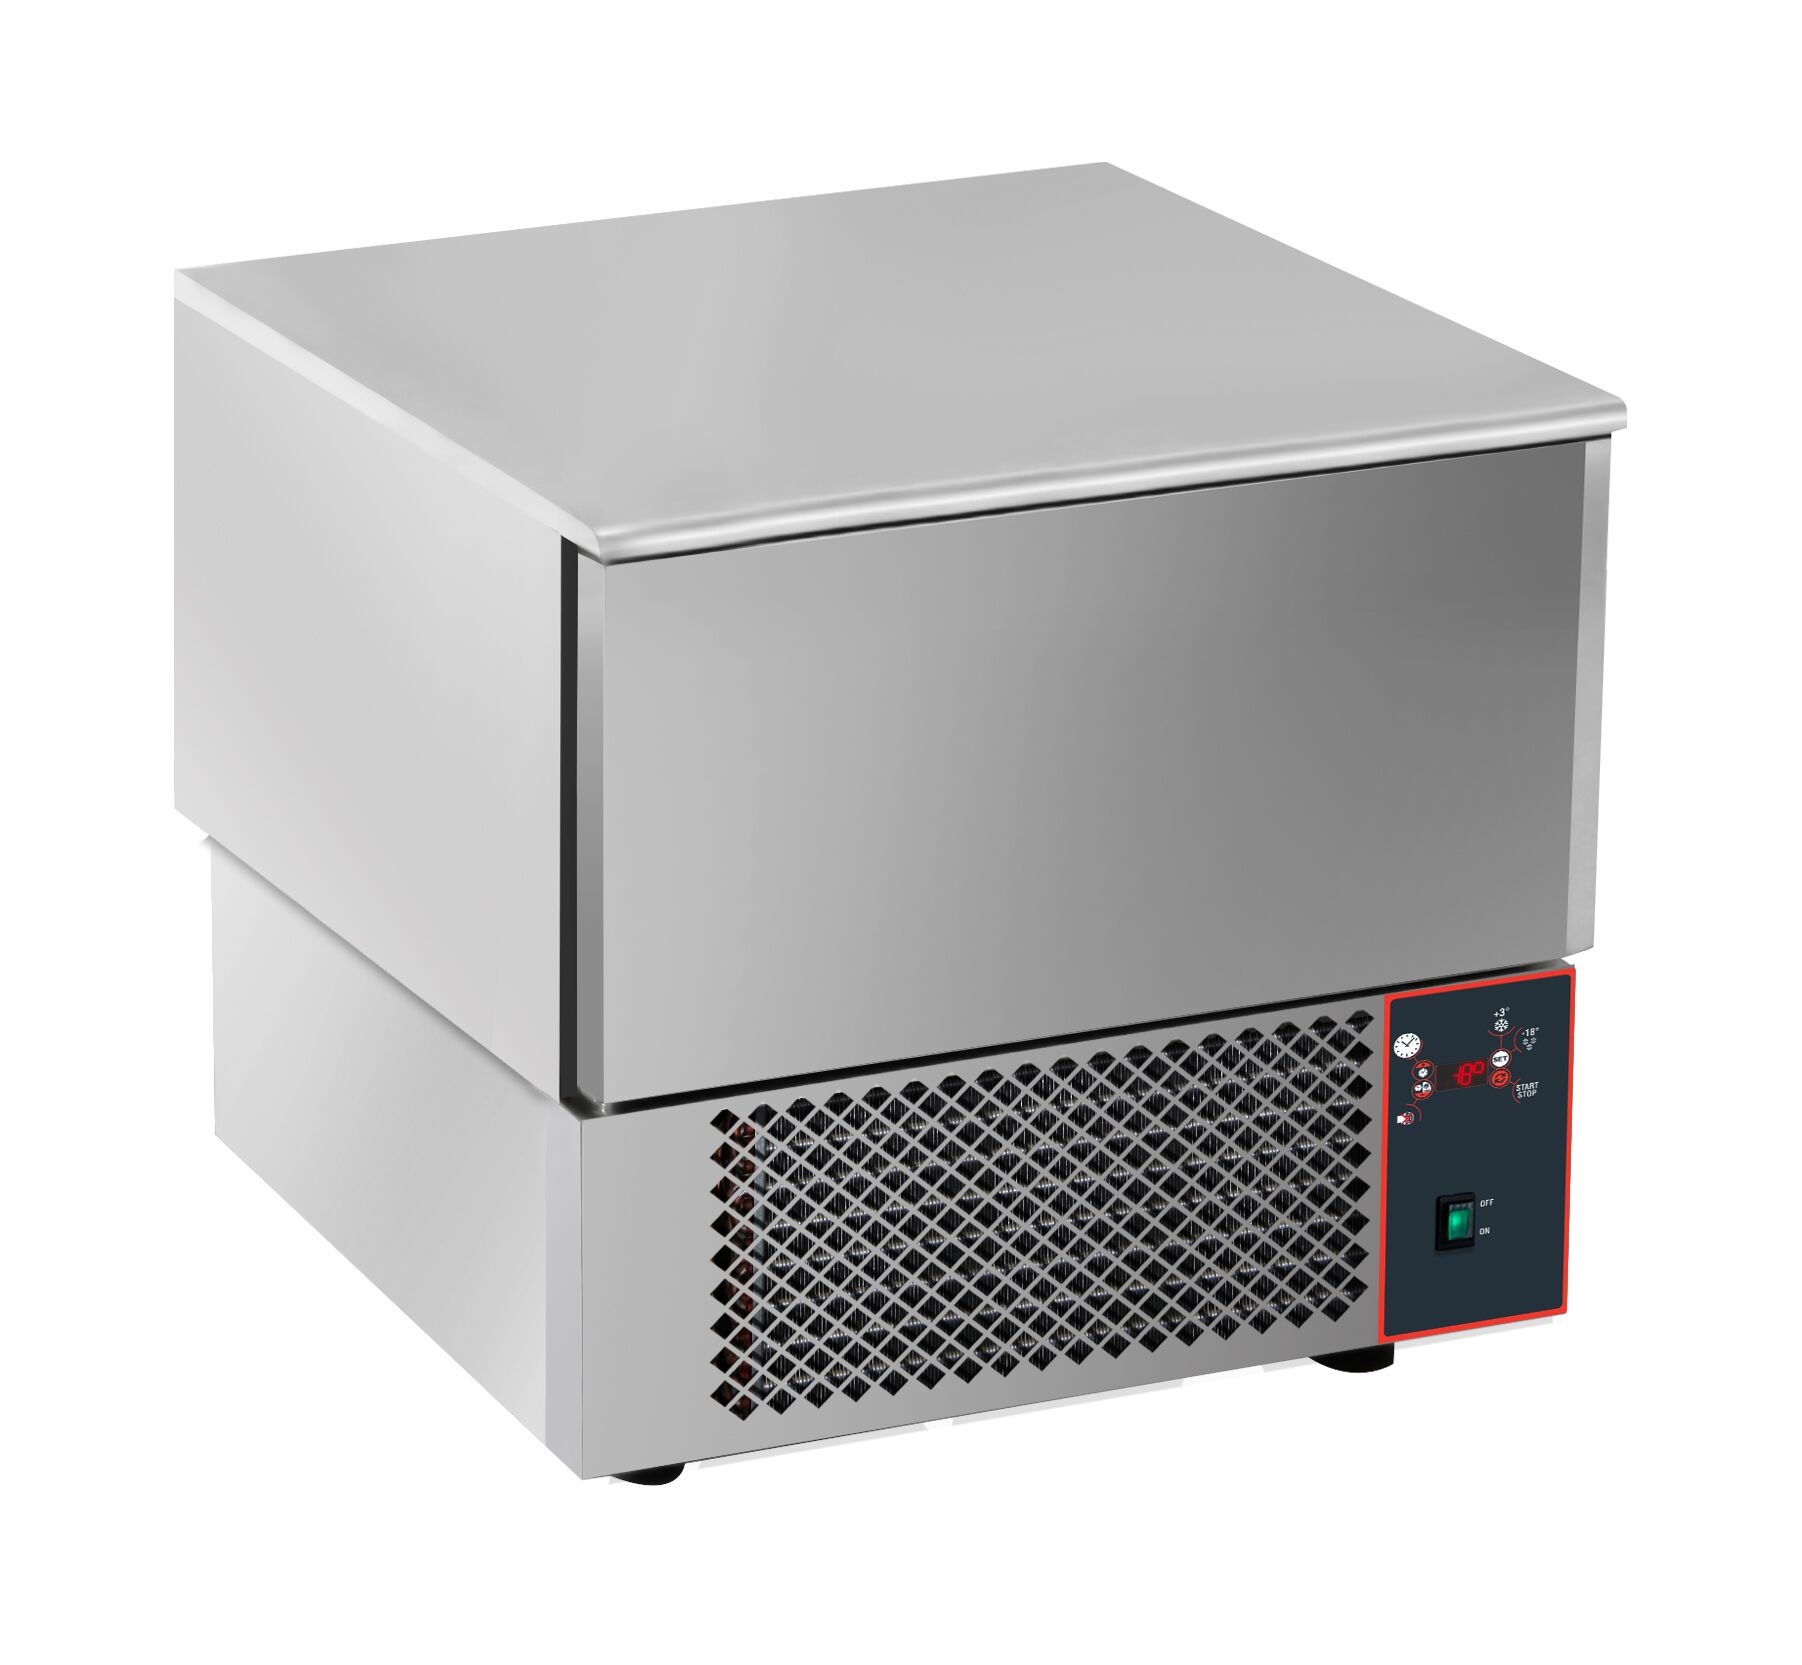 Schnellkühler 3x 1/1GN | Digitalanzeige | 750x750x(H)770-790mm